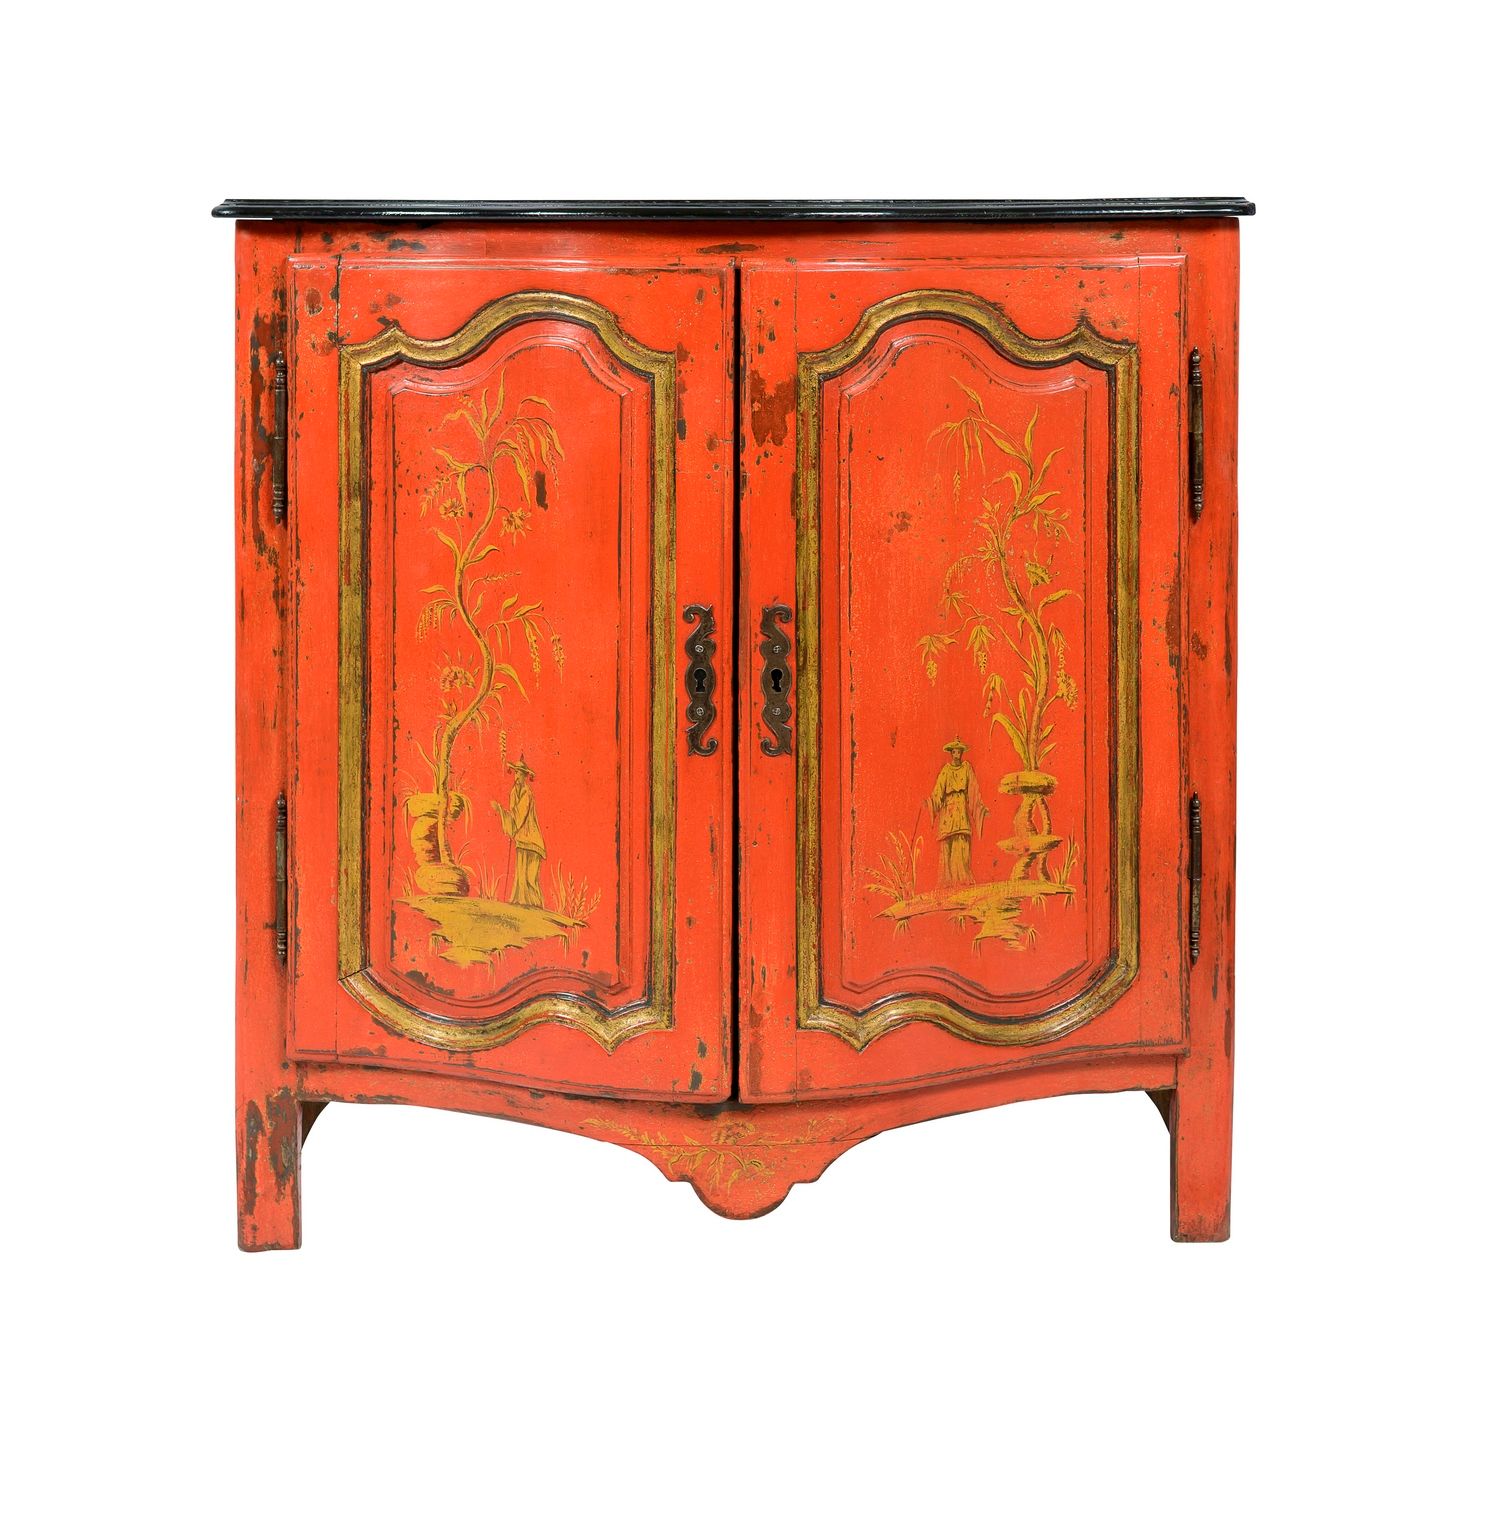 Null 一个带有中国风格的漆制 "石鸡 "装饰的弩形凹槽。

18世纪初

高度：厘米。

重现